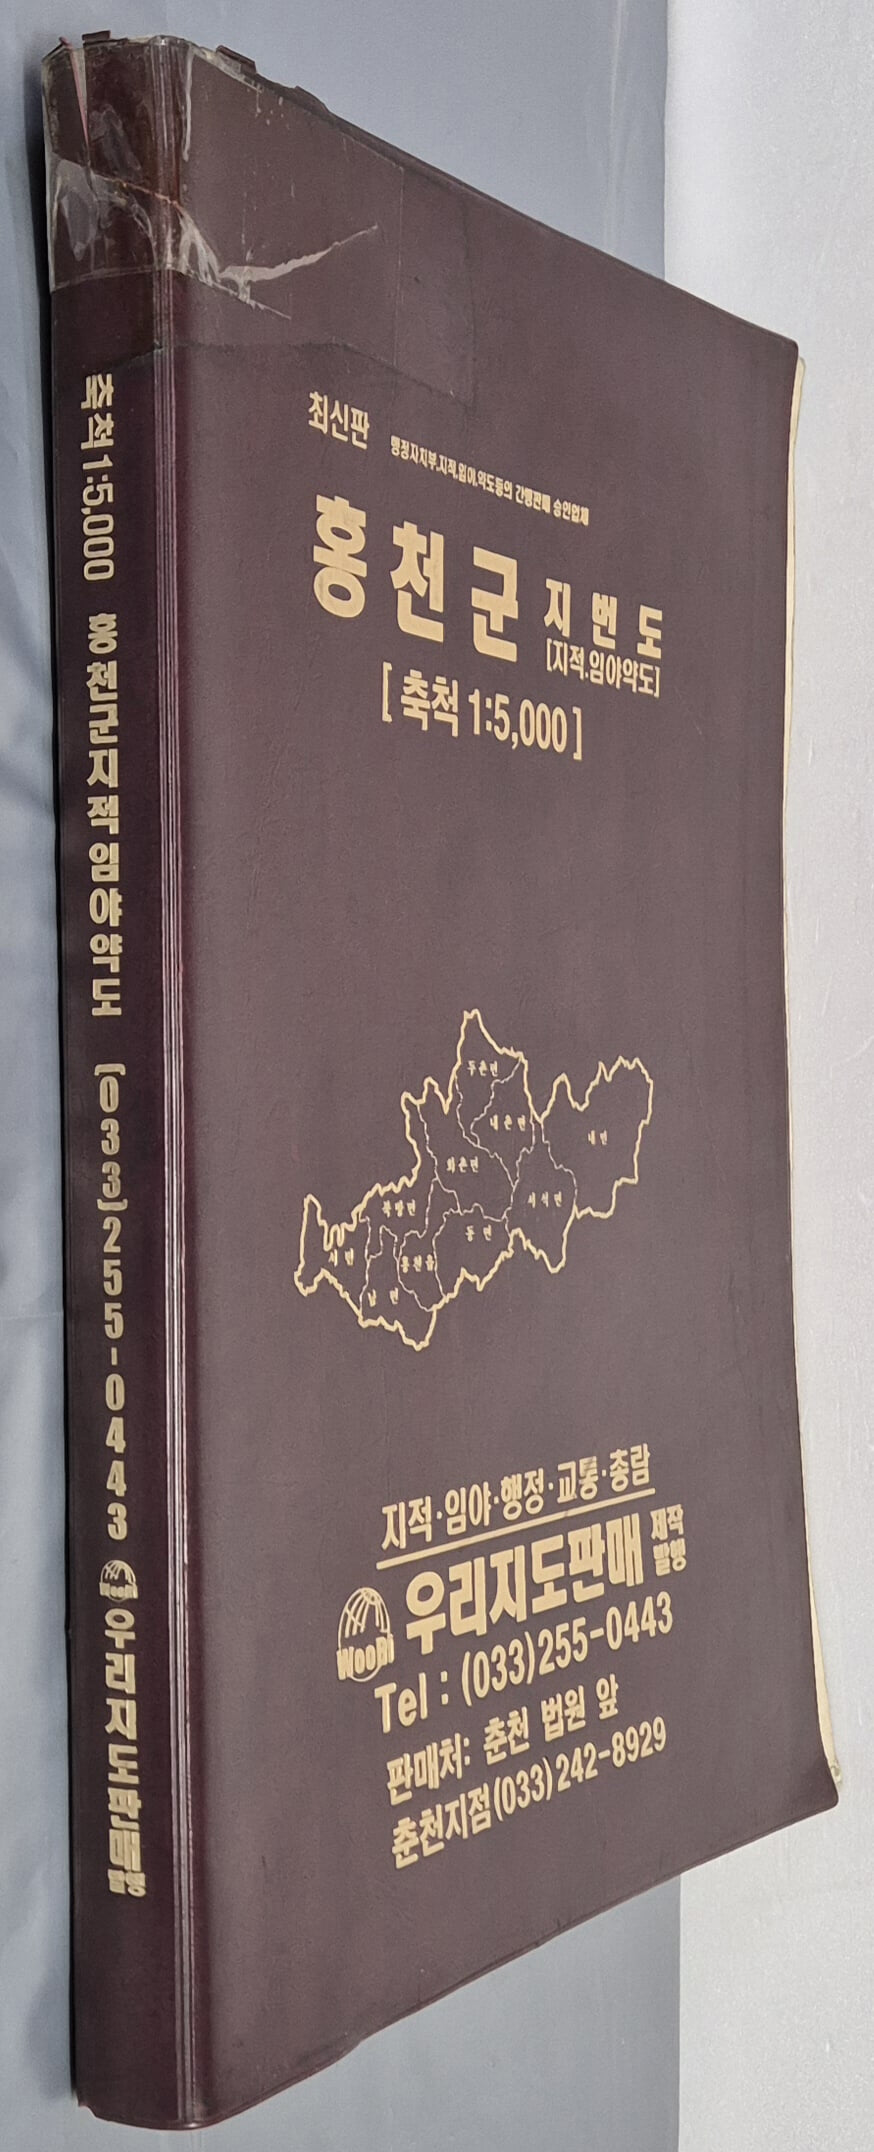 최신판 홍천군 지적, 임야 약도 (축척:1/5,000) - 2004년 우리지도판매